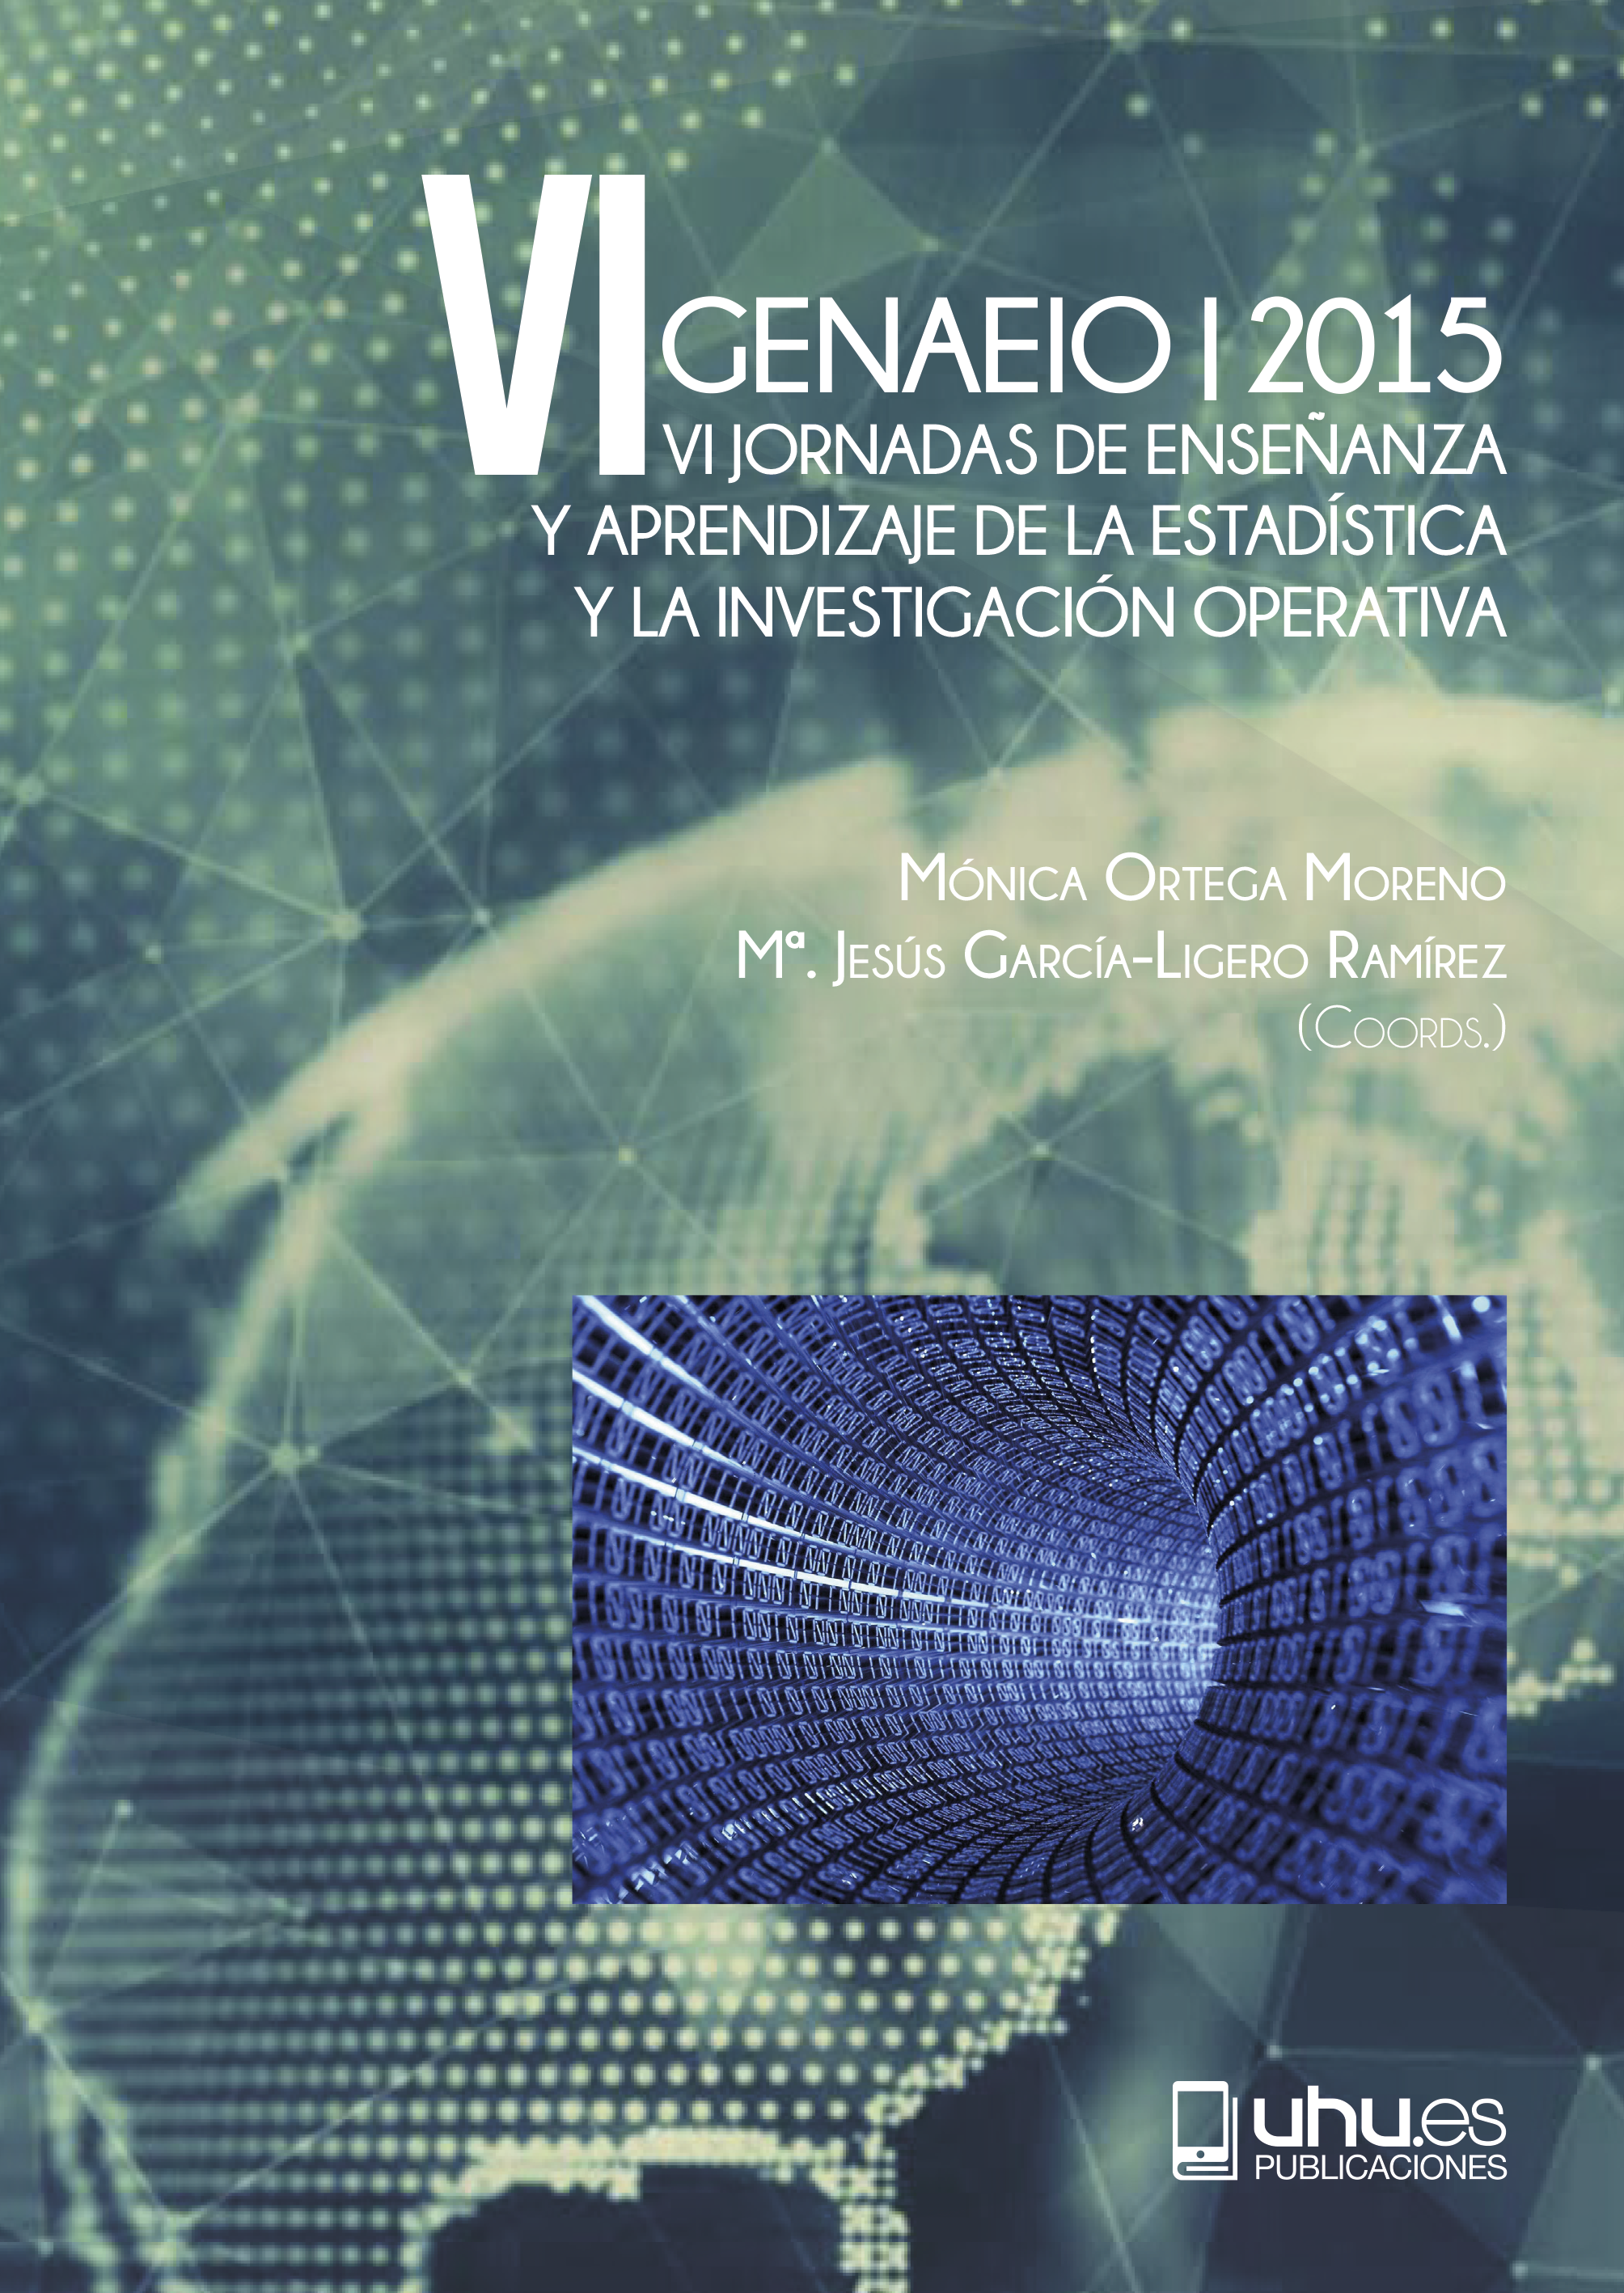 Imagen de portada del libro VI GENAEIO 2015